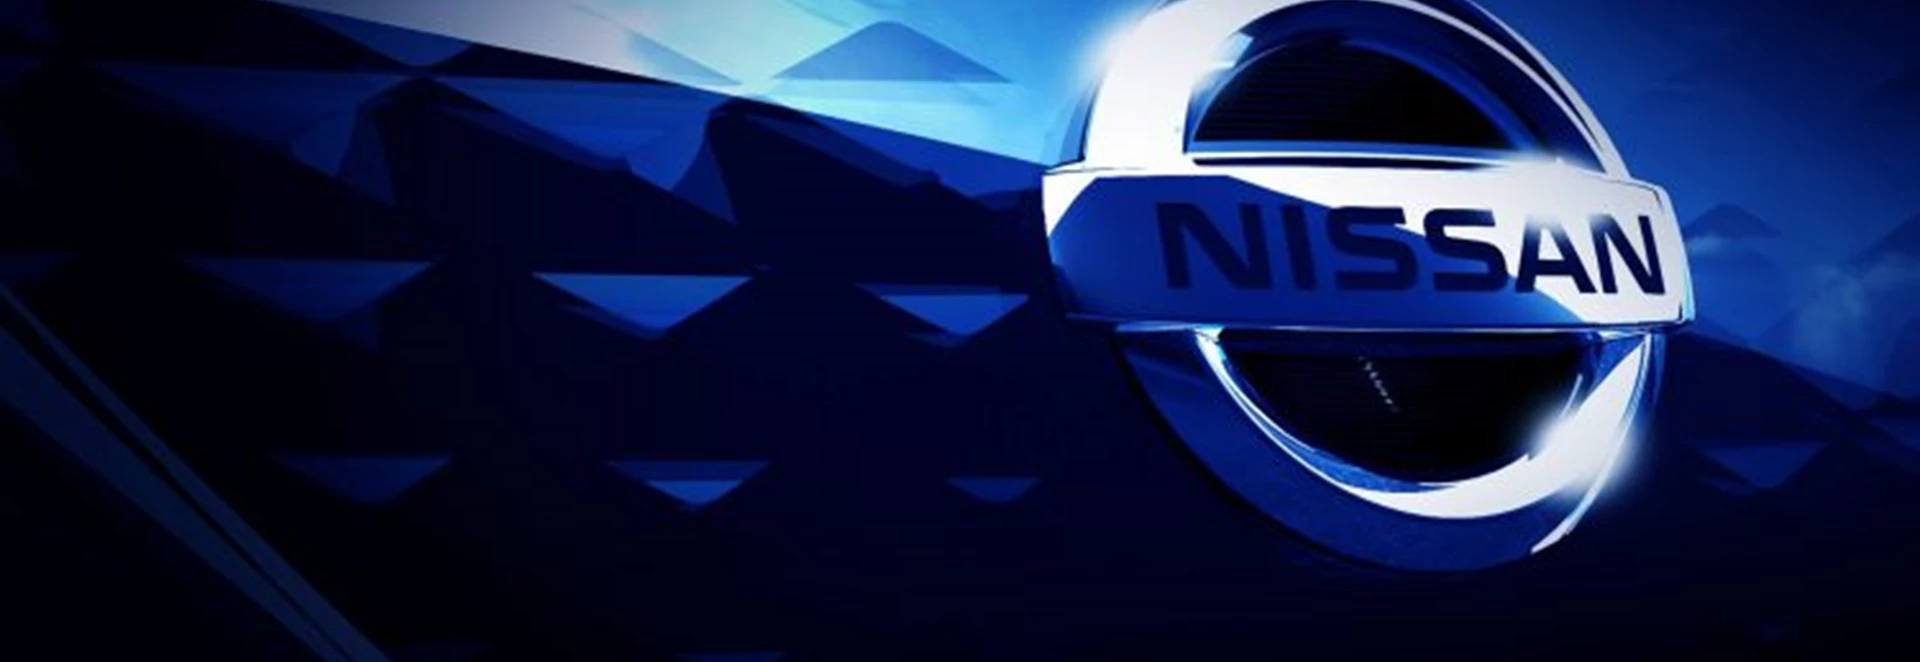 2017 Nissan LEAF teaser image hints at radical new design